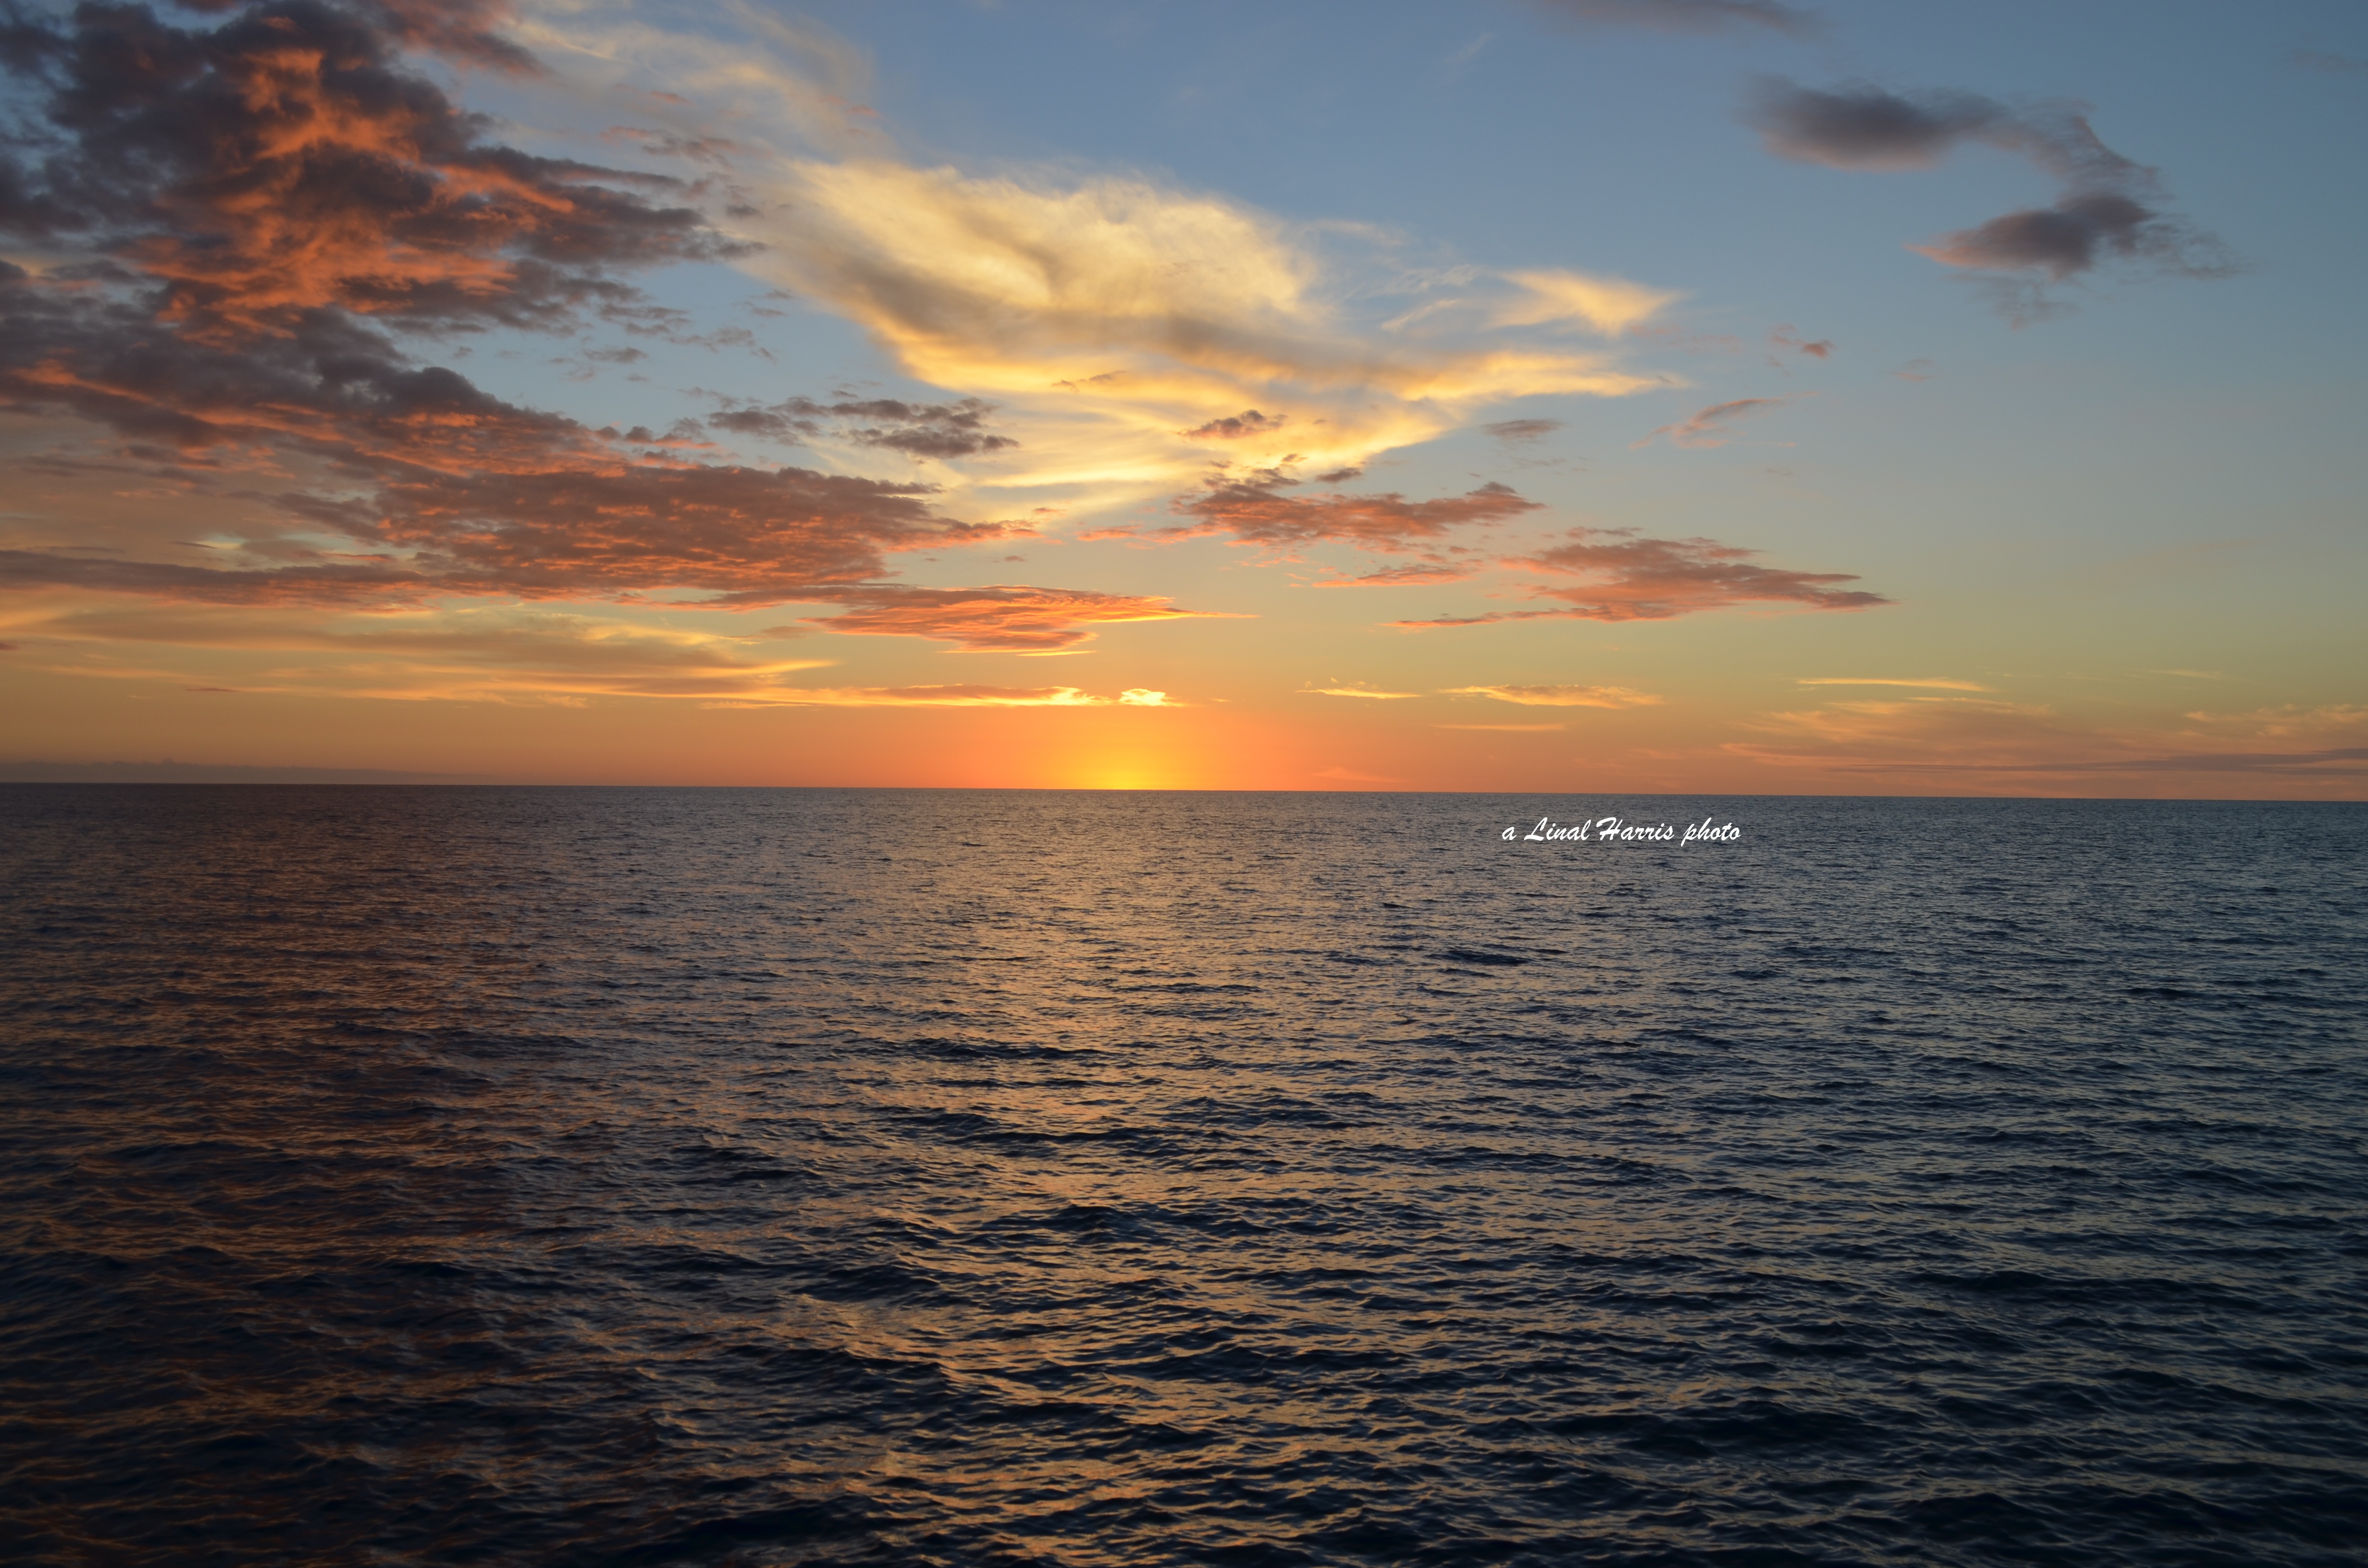 bismarck-sea-sunset.jpg (4928×3264) | Landscape | Pinterest ...